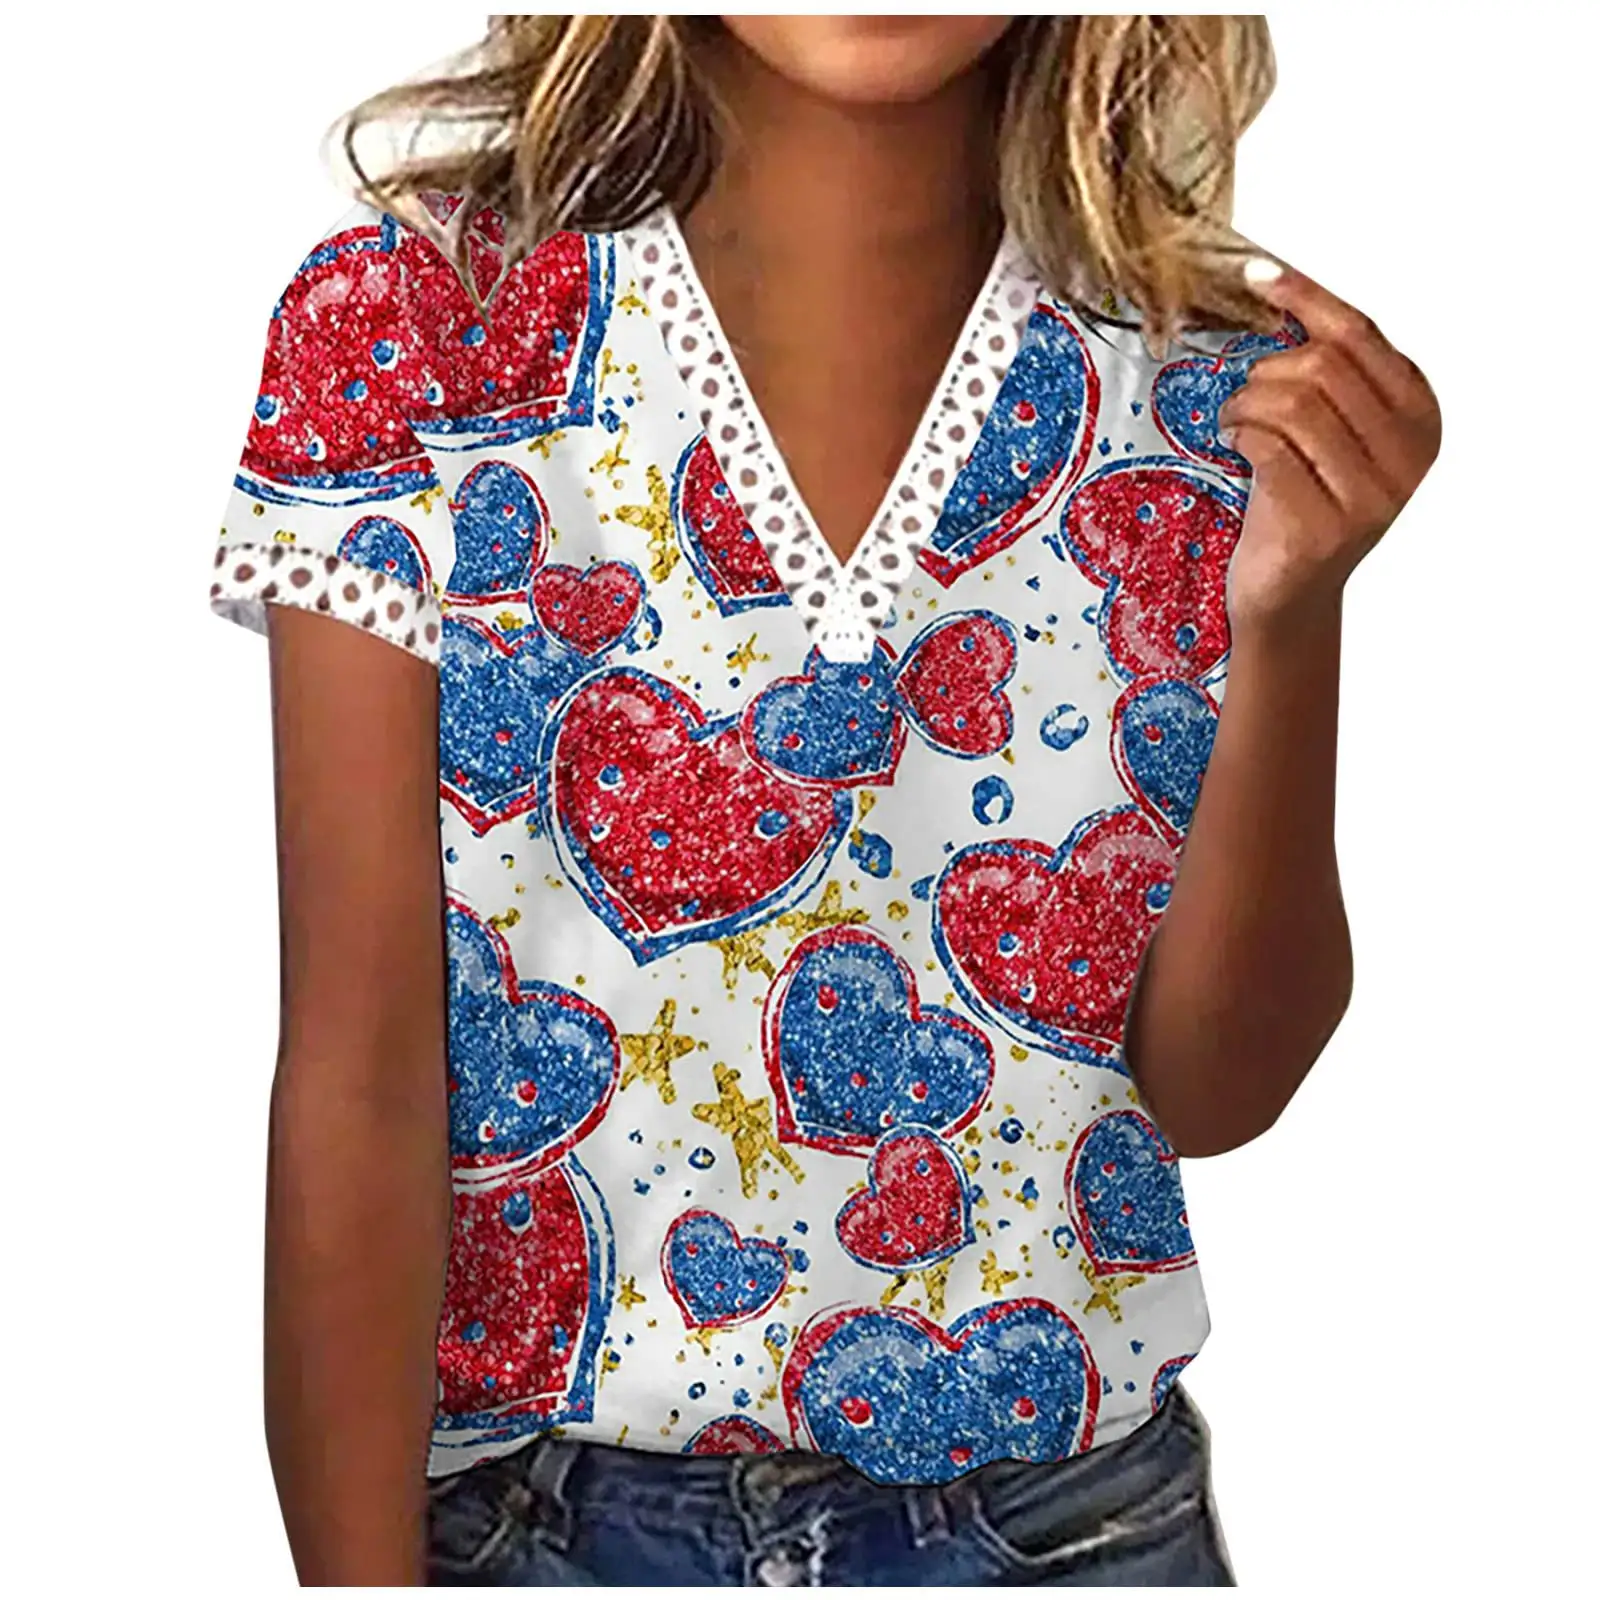 Женские футболки с принтом для Дня независимости США, красно-белые и синие футболки с принтом, блузки с коротким рукавом и V-образным вырезом